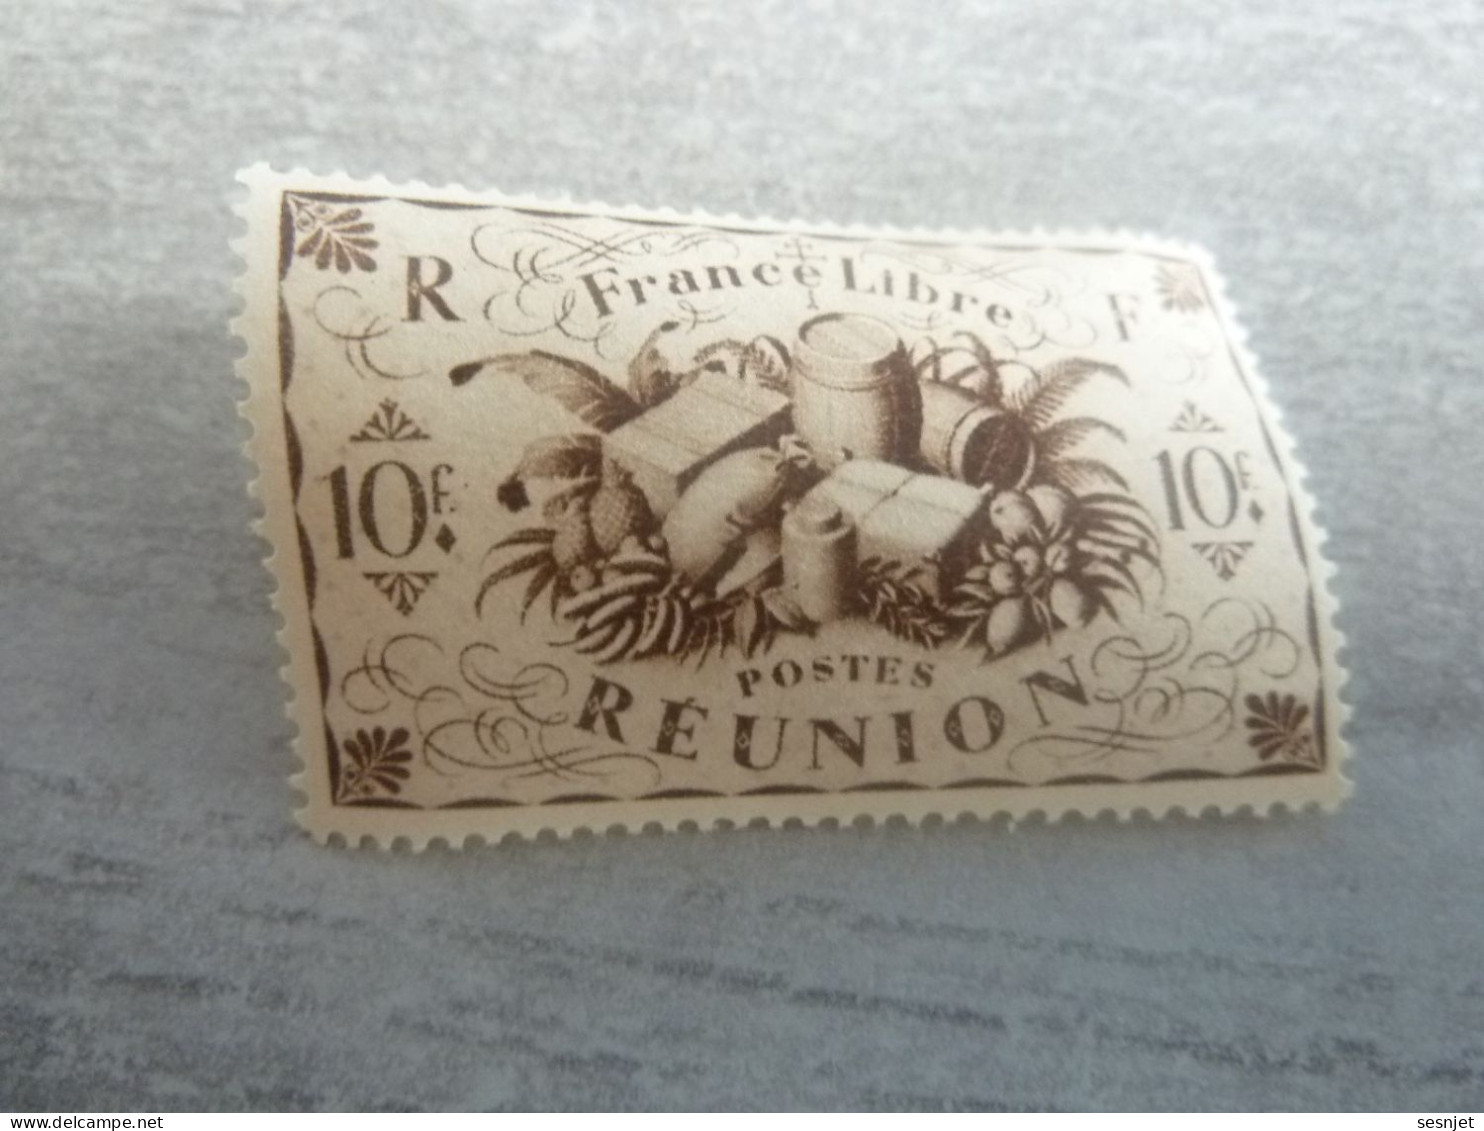 Série De Londres - France-Libre - Réunion  - 10f. - Yt 245 - Brun - Neuf Sans Trace De Charnière - Année 1943 - - Nuevos